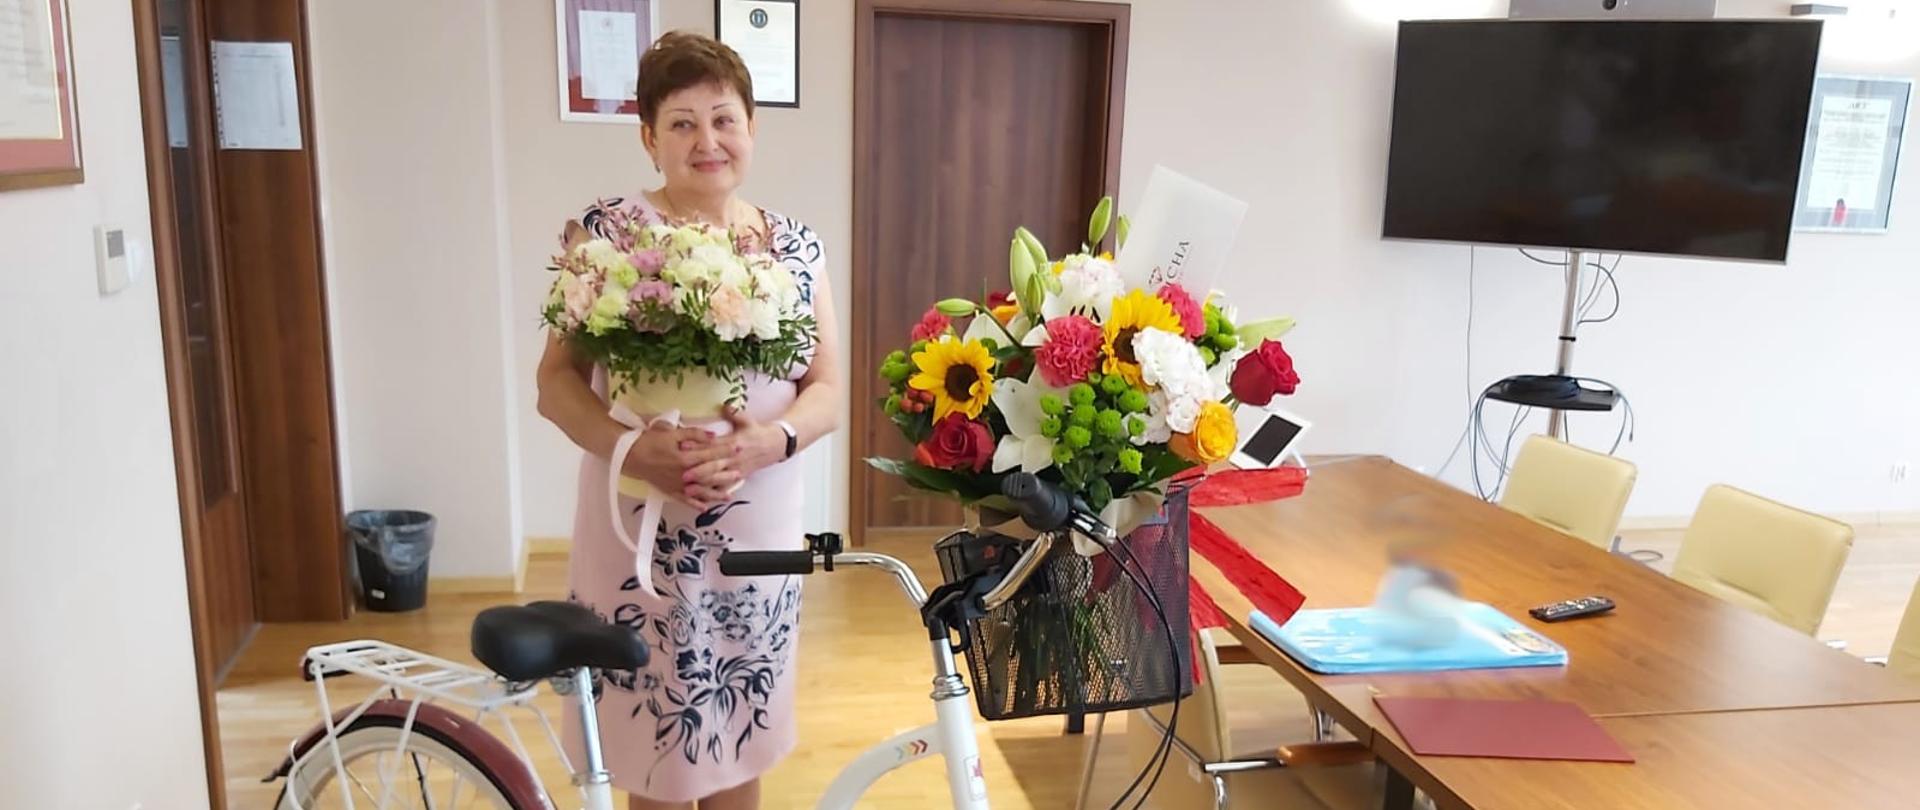 Osoba odchodząca na emeryturę stoi z kwiatami a przed nią stoi rower.